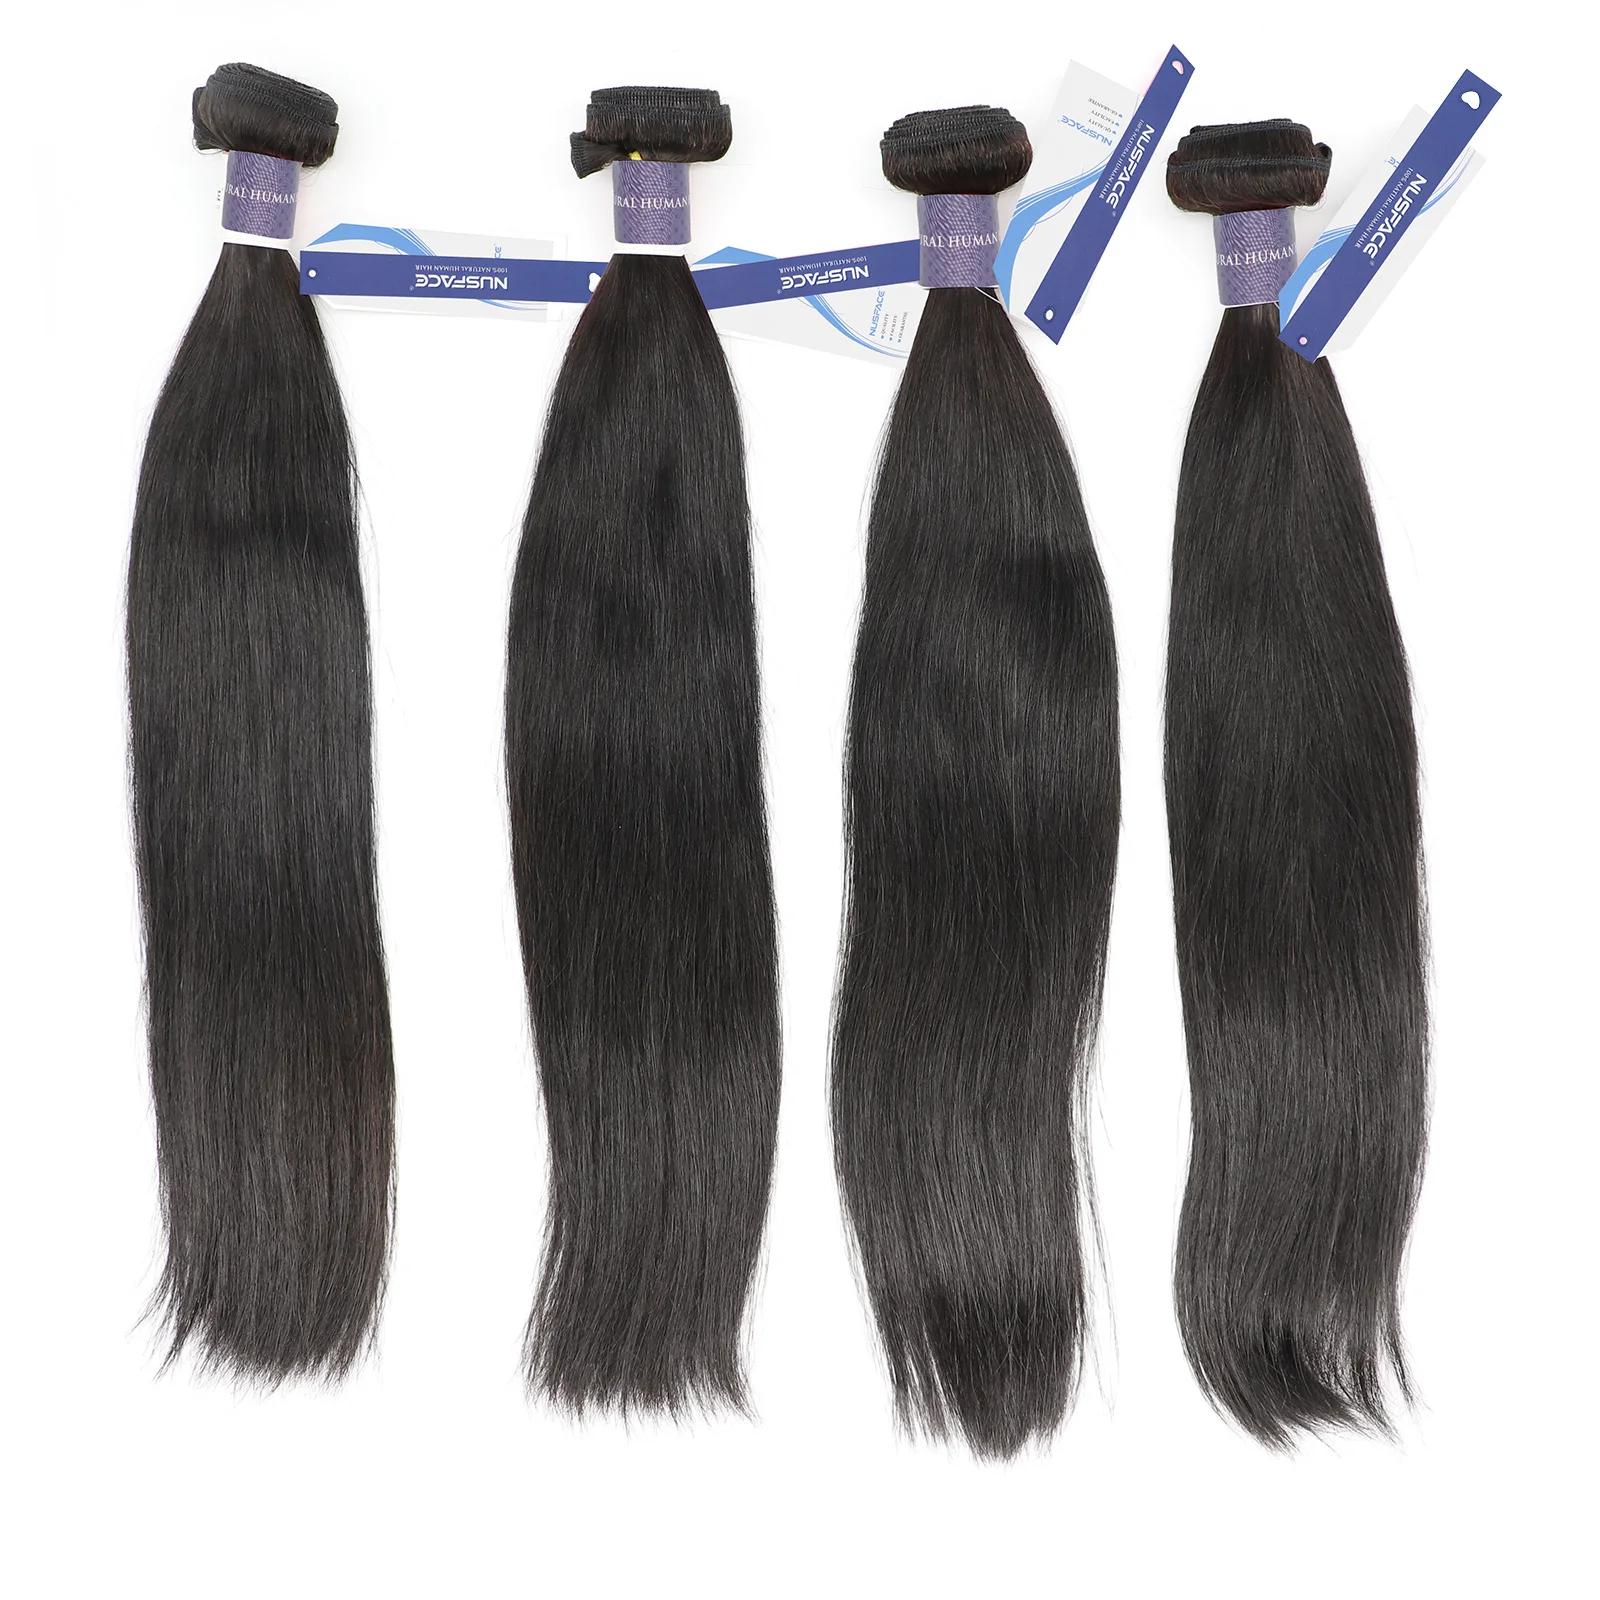 hair bundles for black woman TOP raw cuticle aligned hair ST straight 1B613#honey blonde european human hair